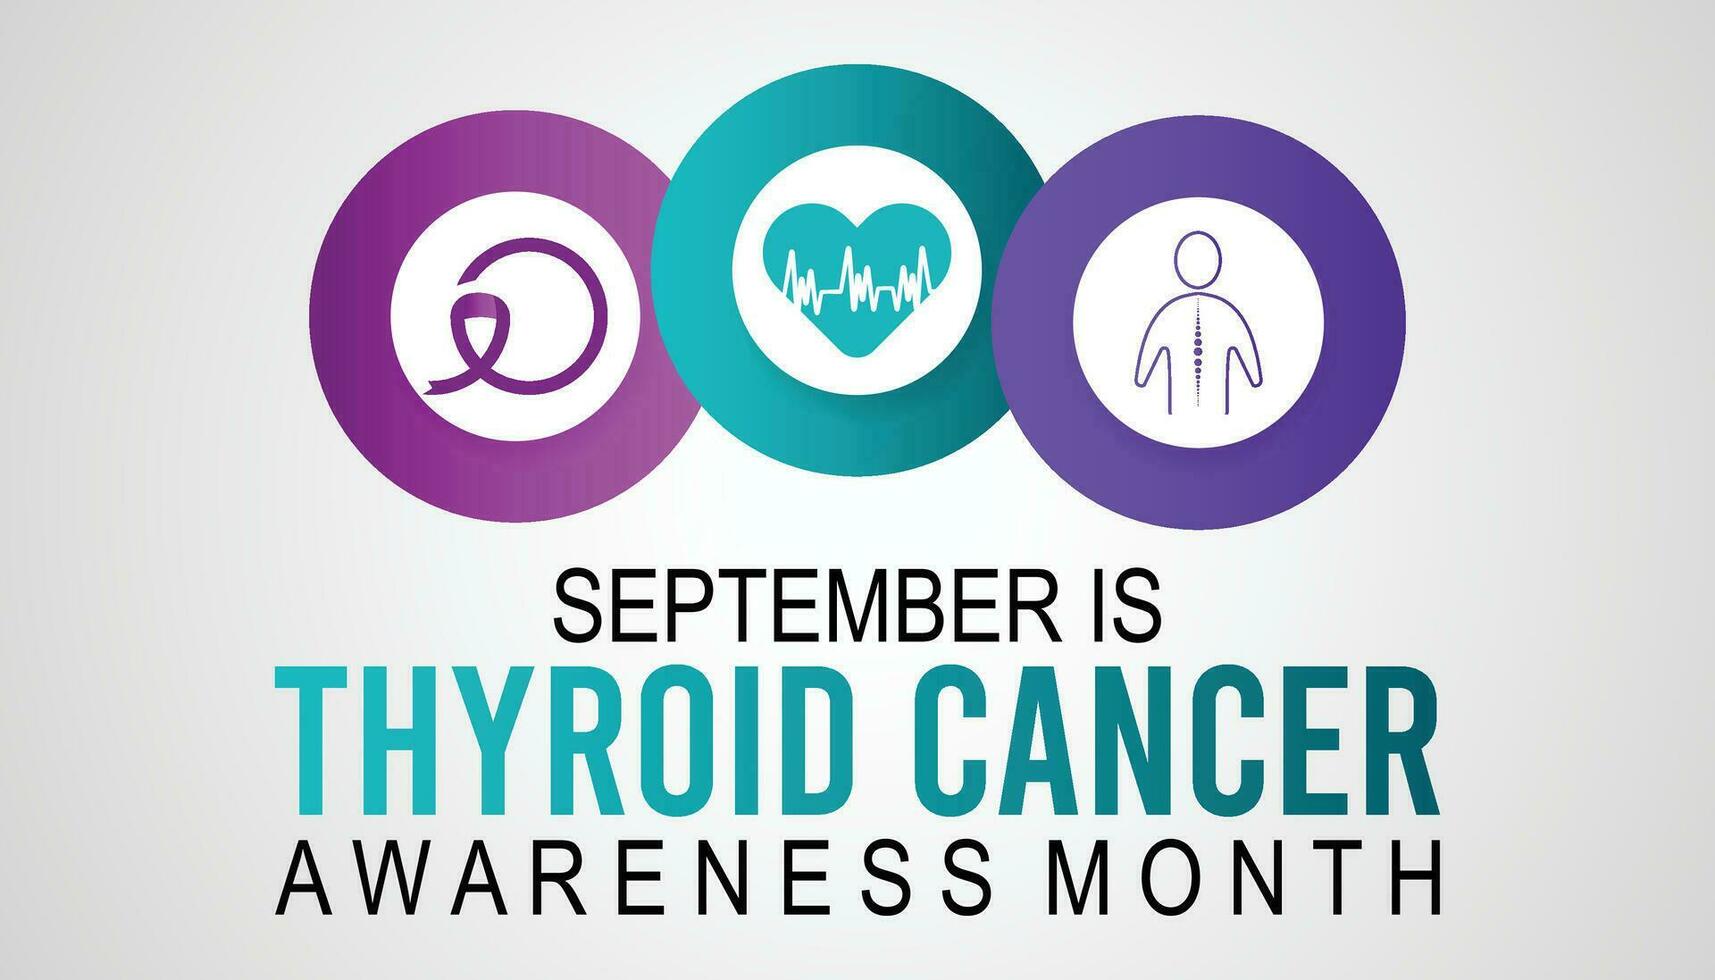 Schilddrüse Krebs Bewusstsein Monat ist beobachtete jeder Jahr im September.Gesundheitswesen und Welt Krebs Tag Konzept. medizinisch Banner vektor